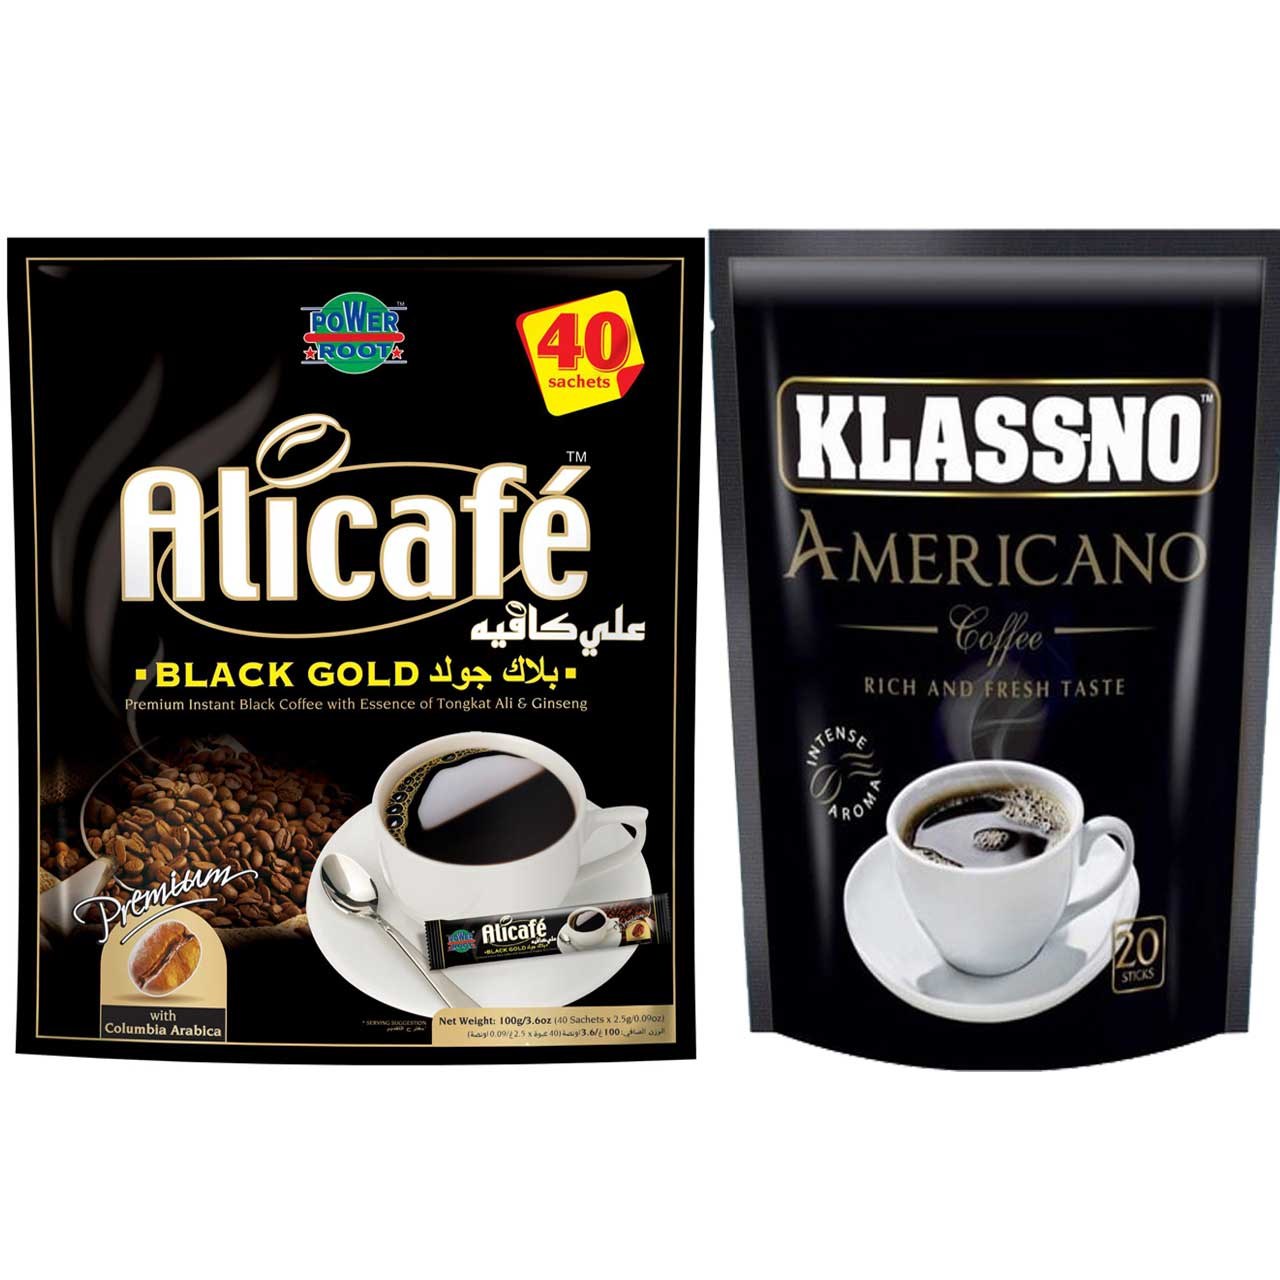 بسته ساشه قهوه علی کافه مدل Black Gold به همراه بسته ساشه قهوه کلسنو مدل Americano